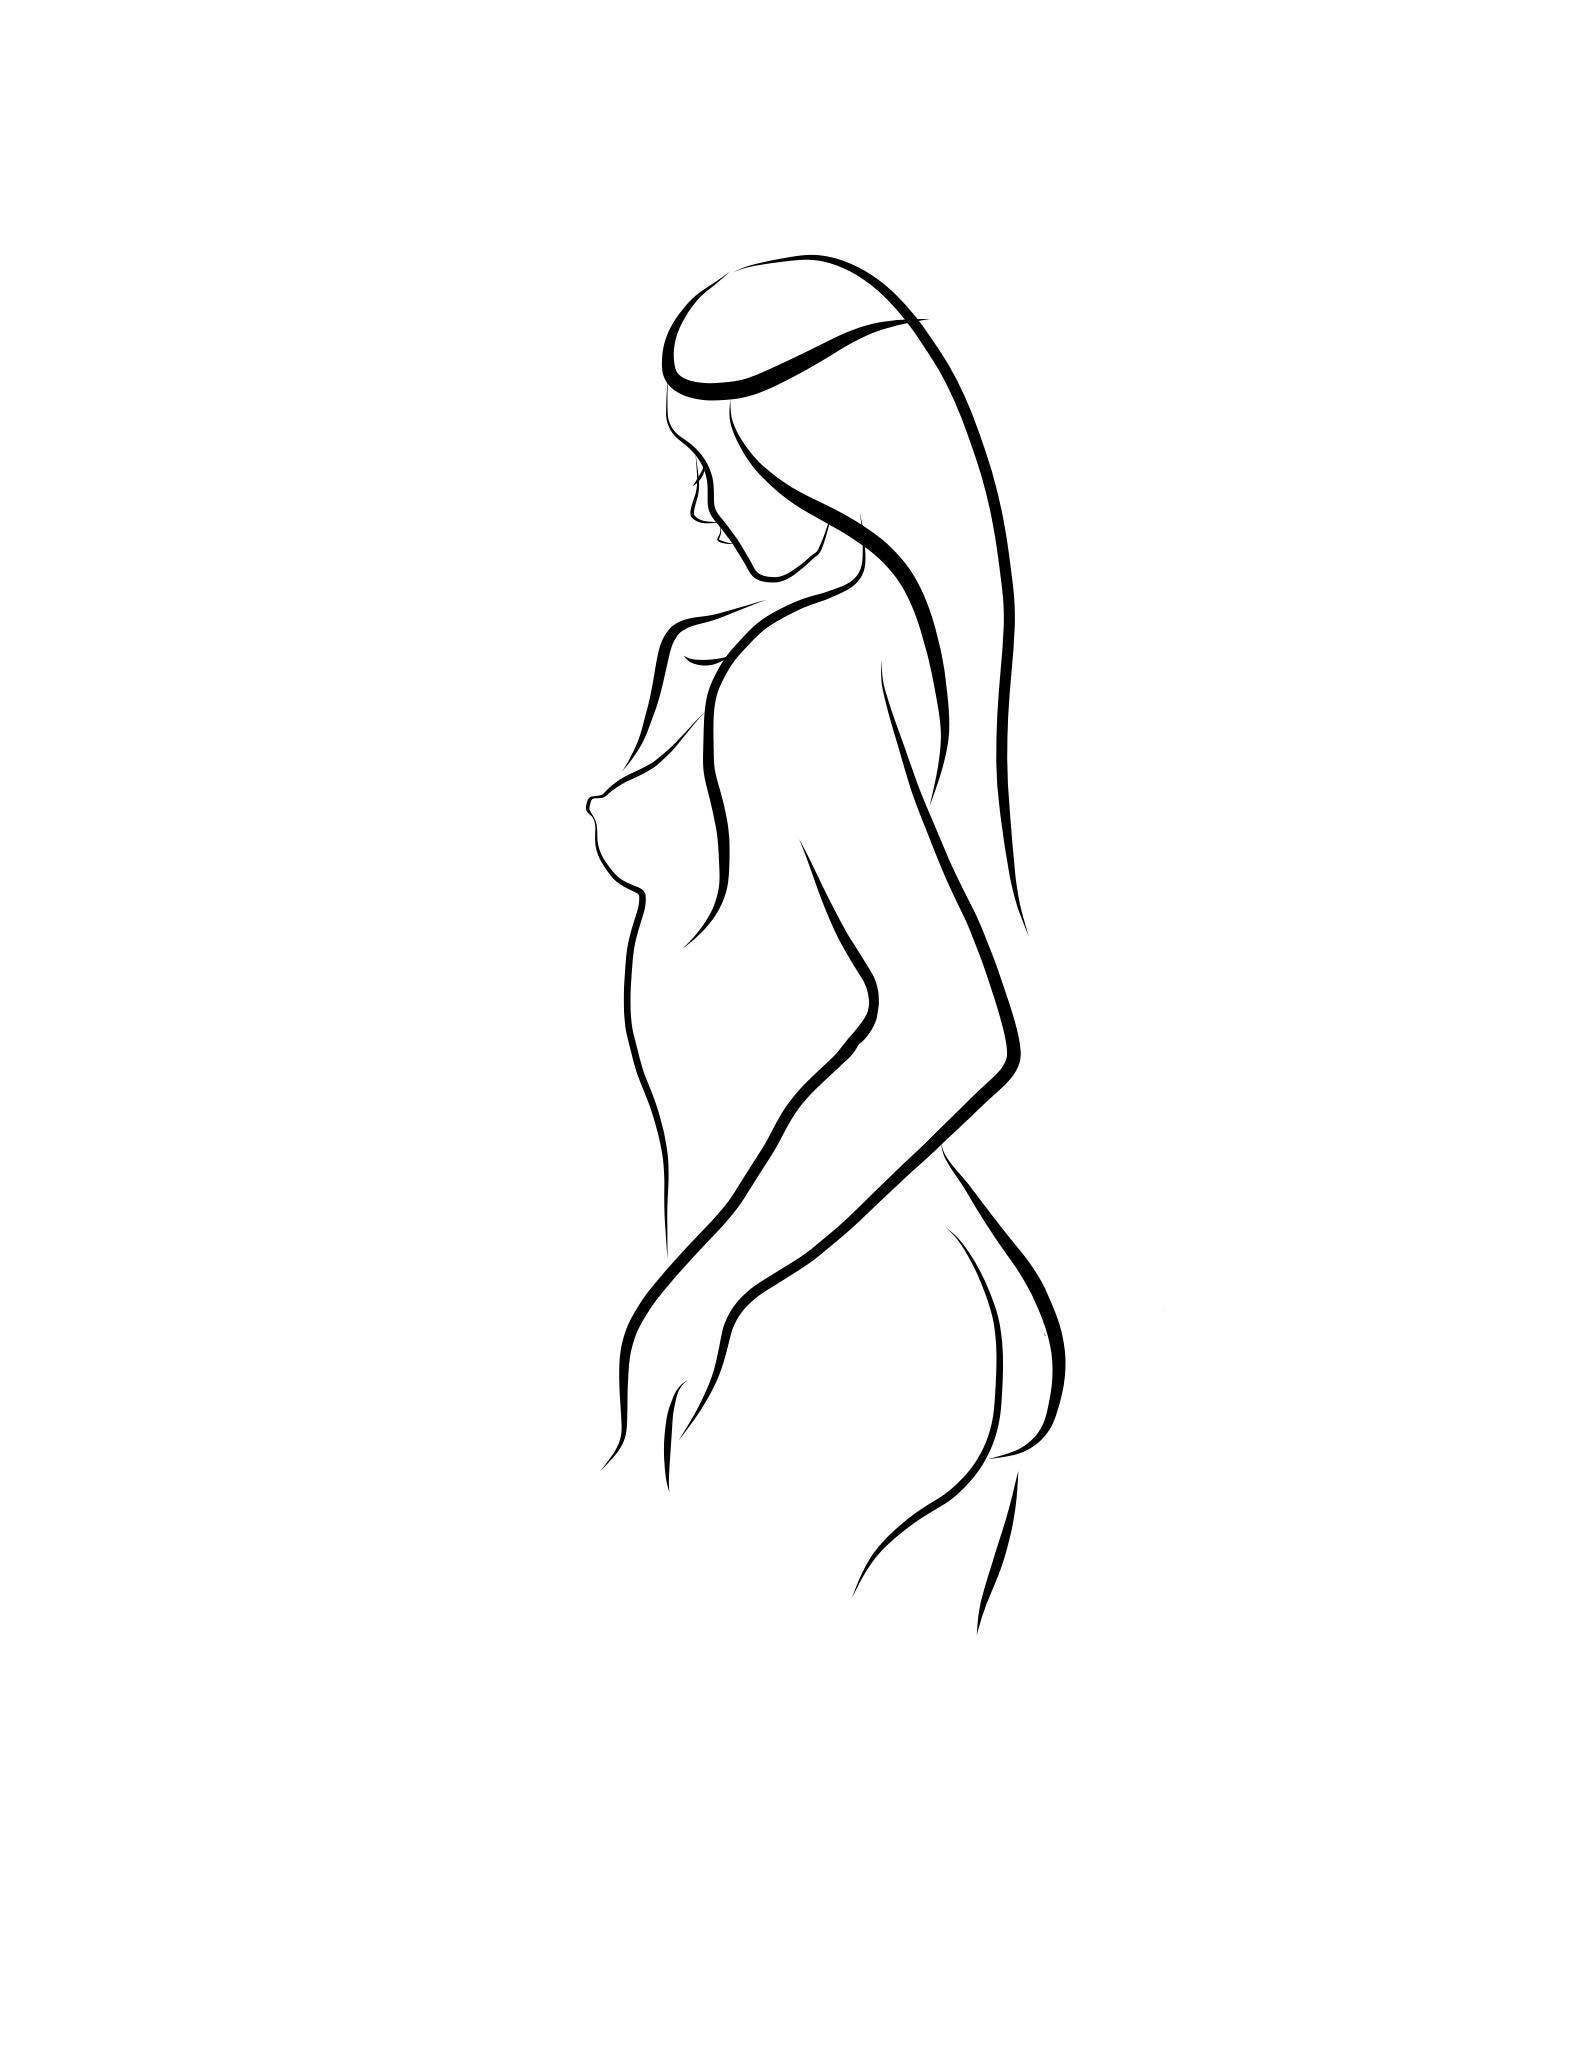 Michael Binkley Nude Print – Haiku #5, 1/50 - Digital Vector Drawing Standing Female Nude Woman Figure from R